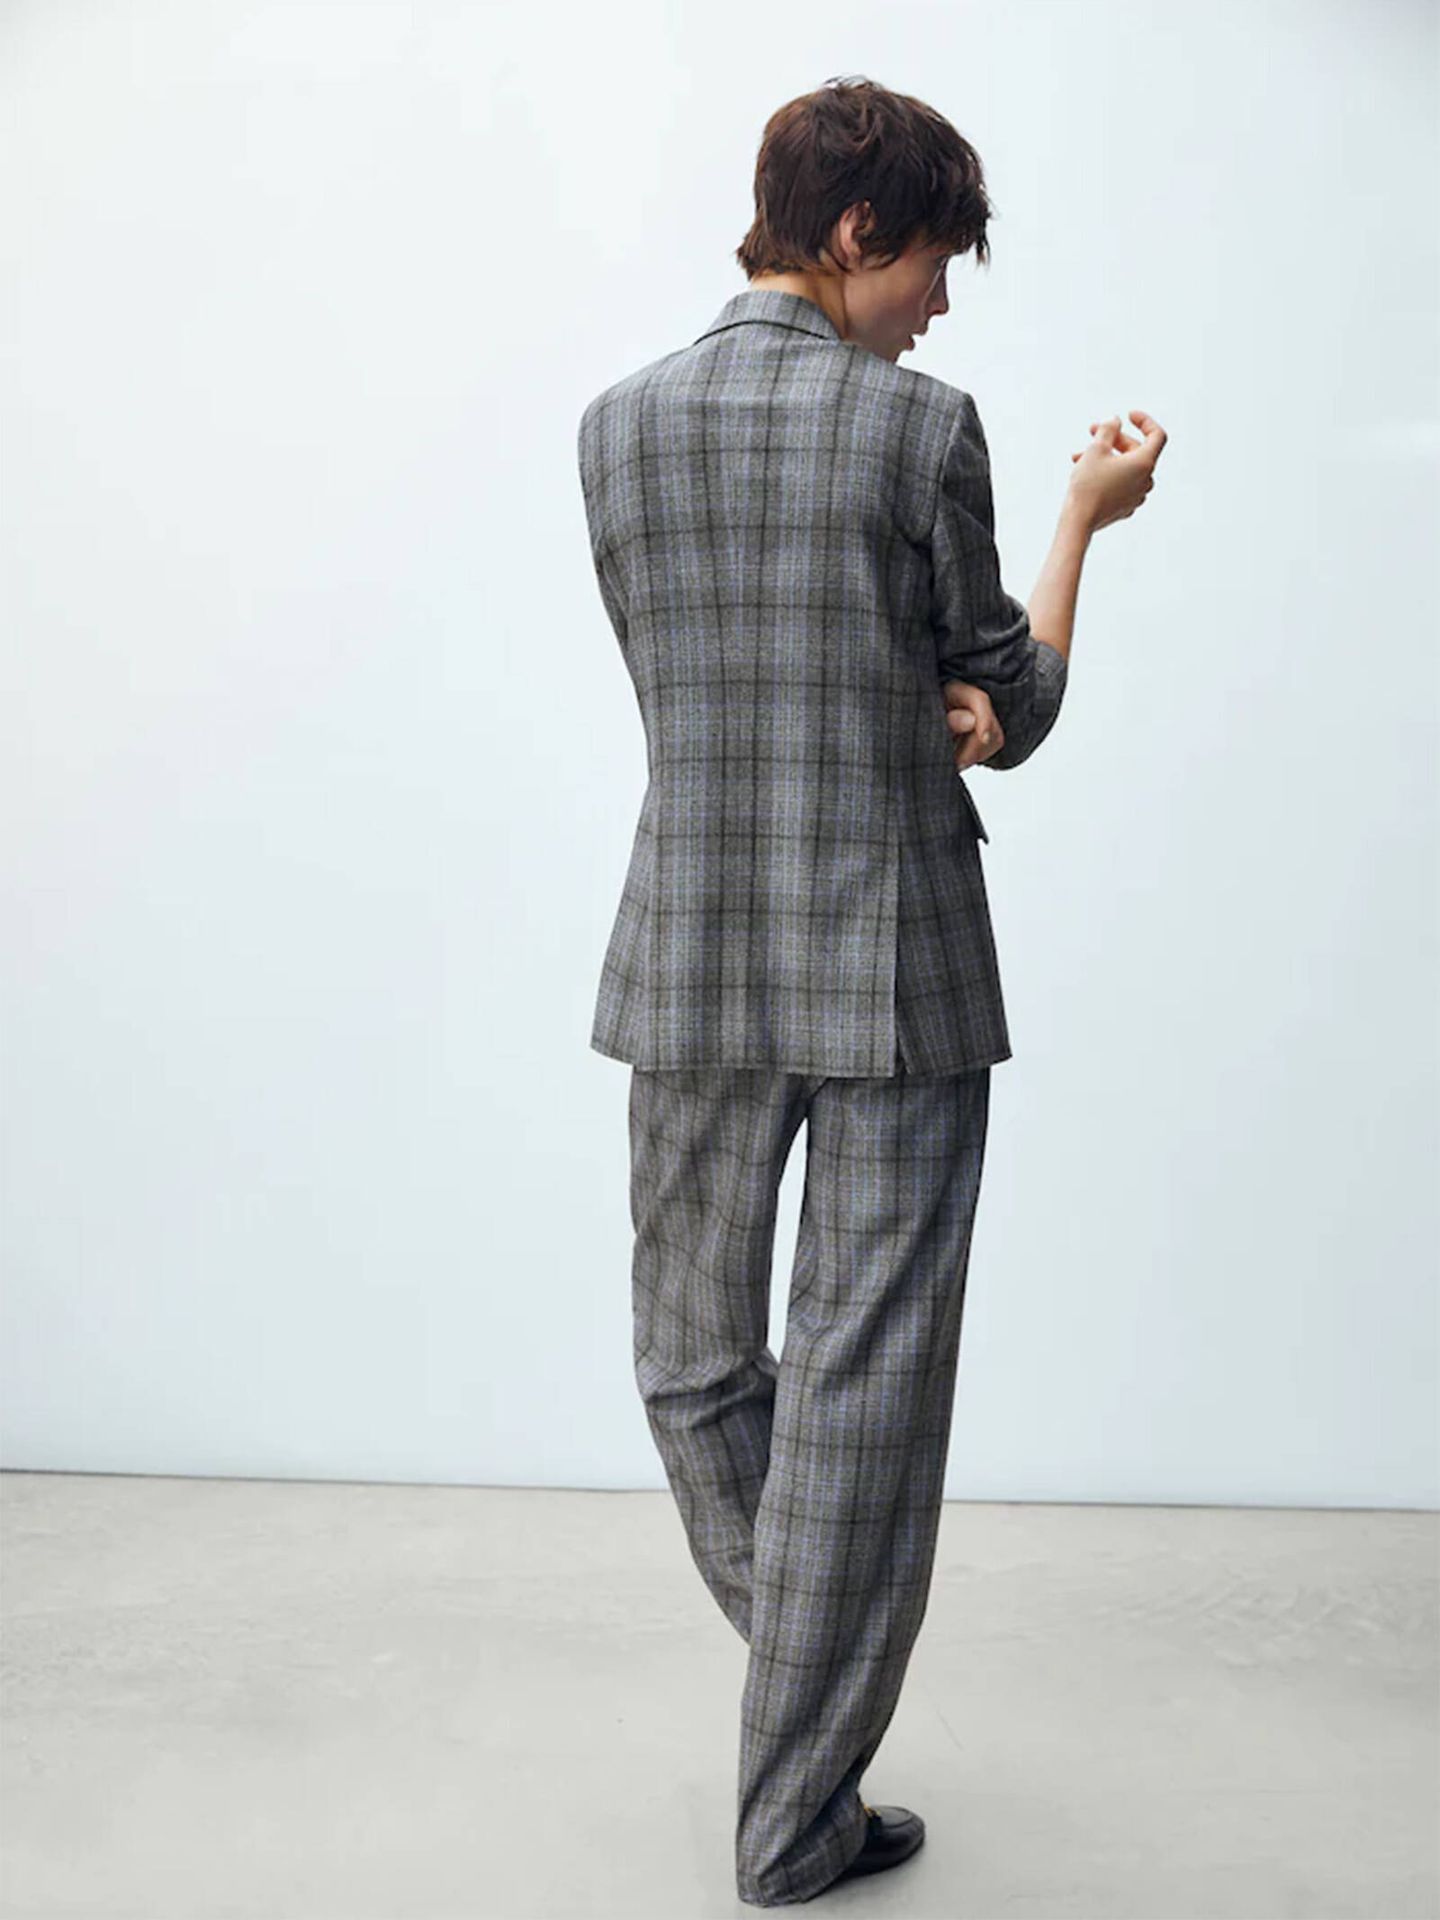 El pantalón de cuadros de Massimo Dutti ideal para un look working. (Cortesía)